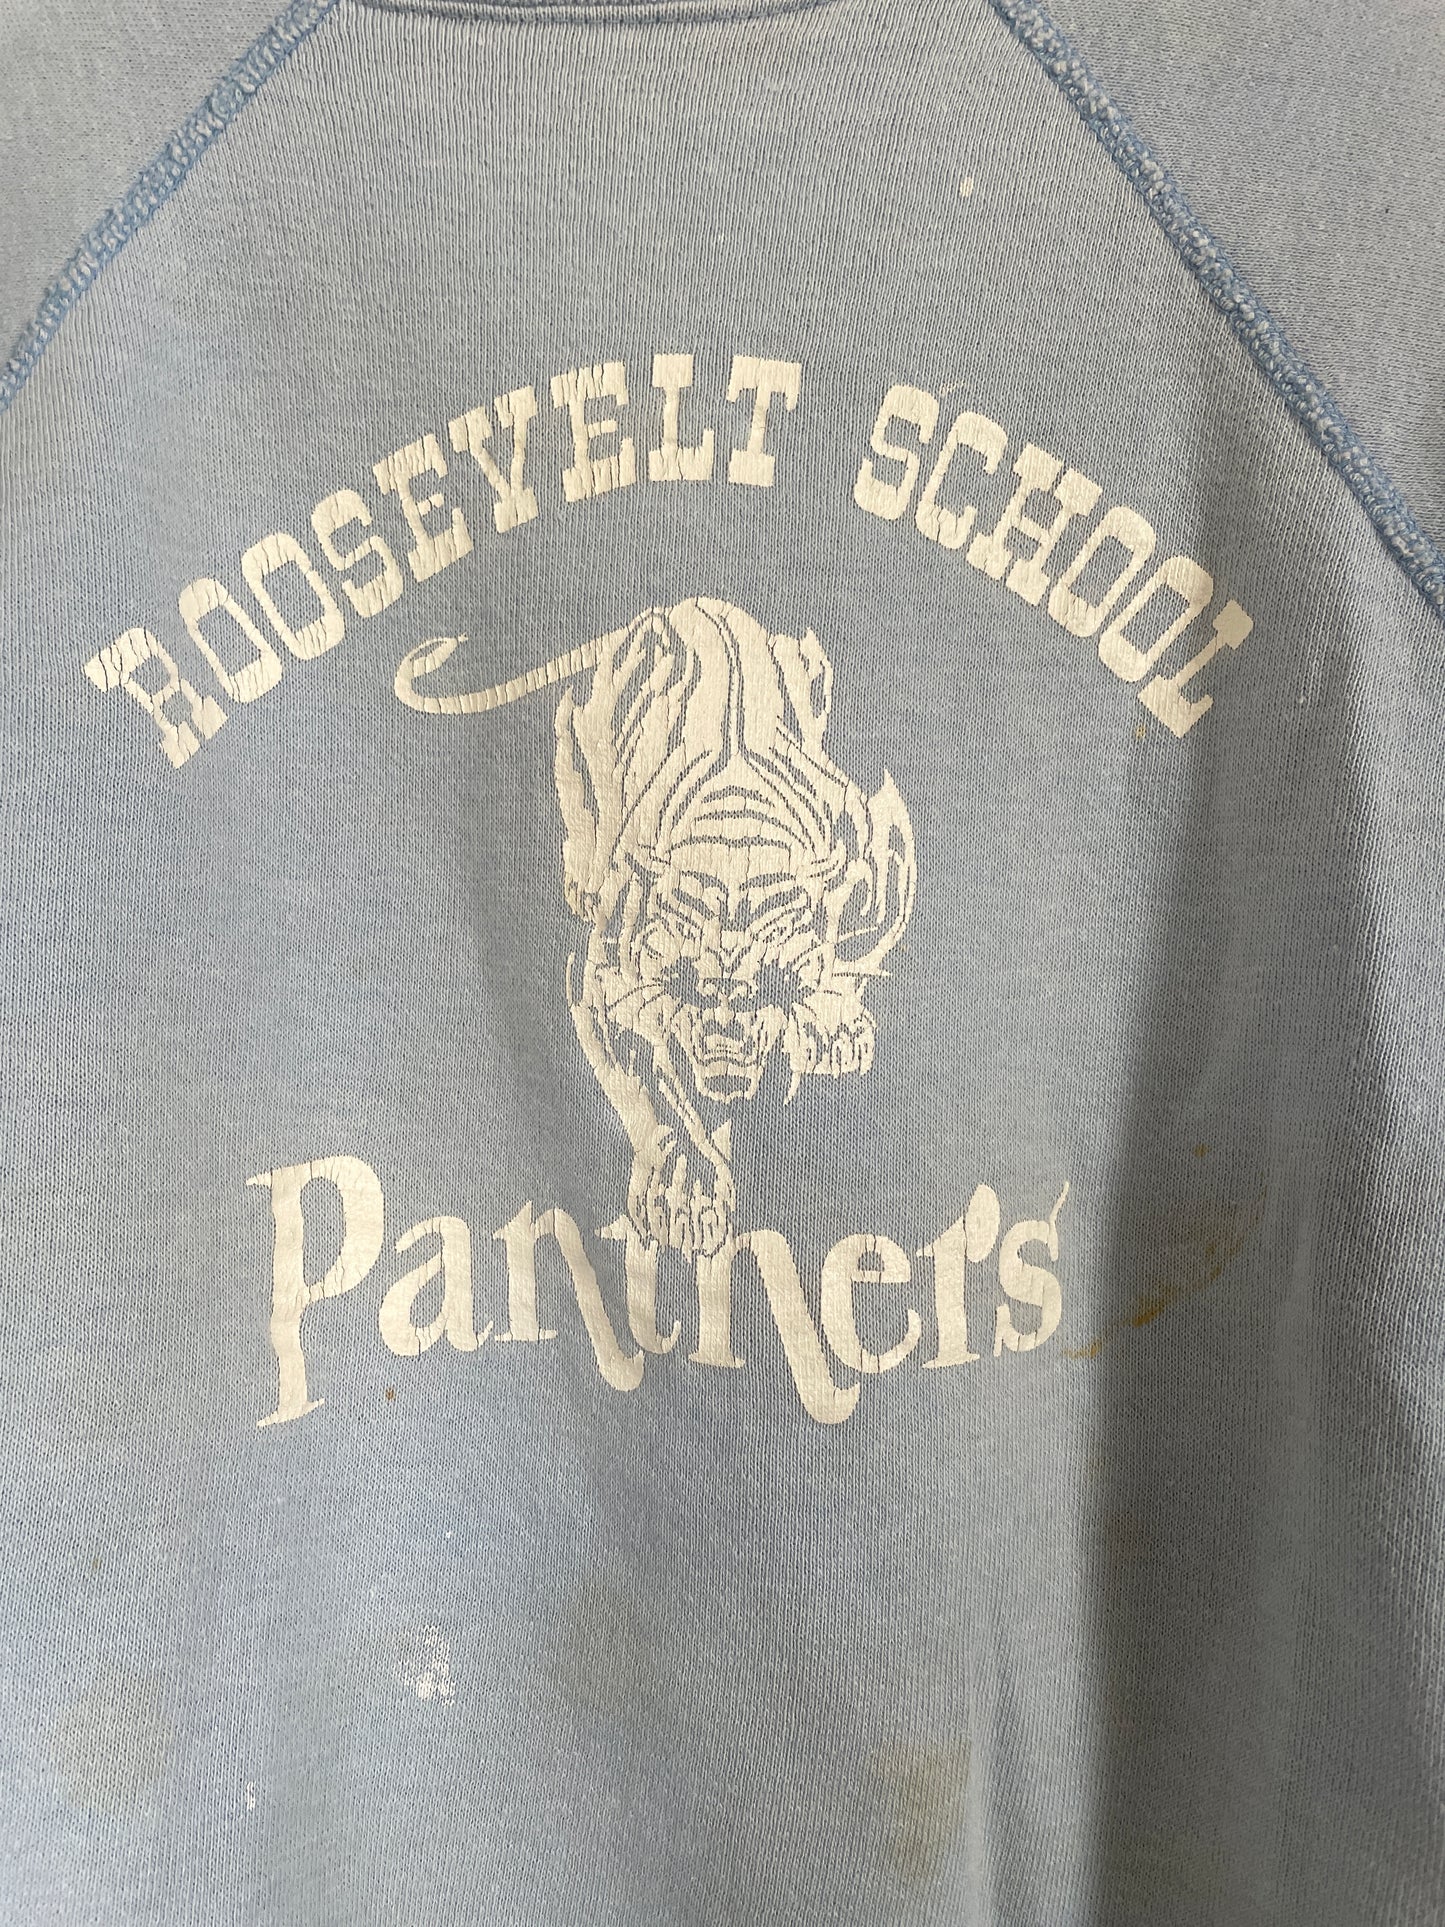 70s Roosevelt School Panthers Sweatshirt